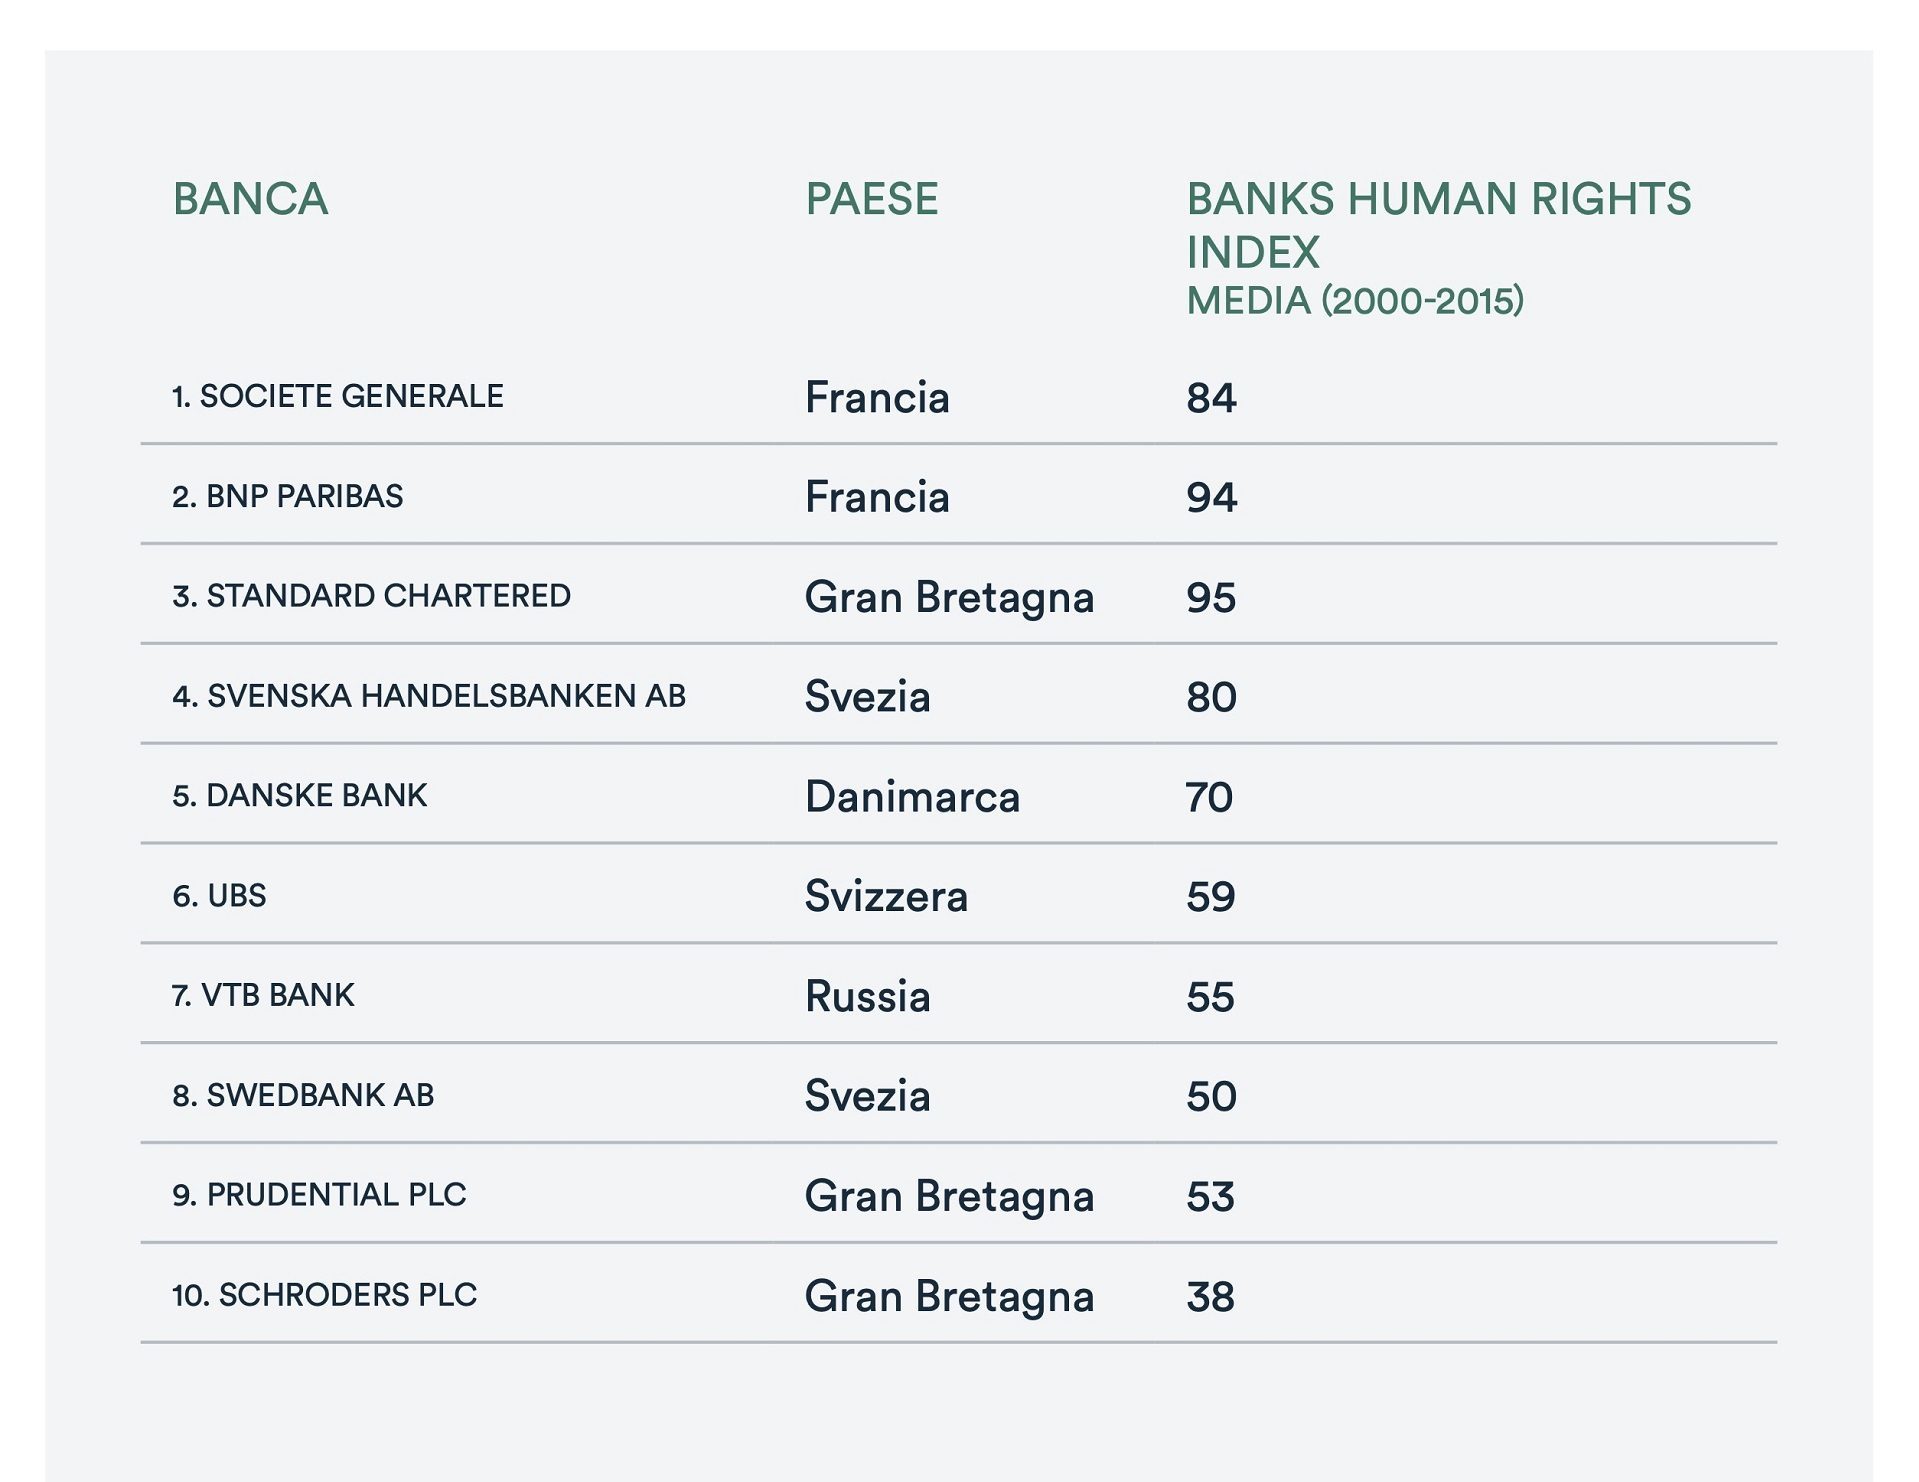 Le dieci banche (con sede in Europa) più esposte a violazioni di diritti umani secondo il Banks human rights index